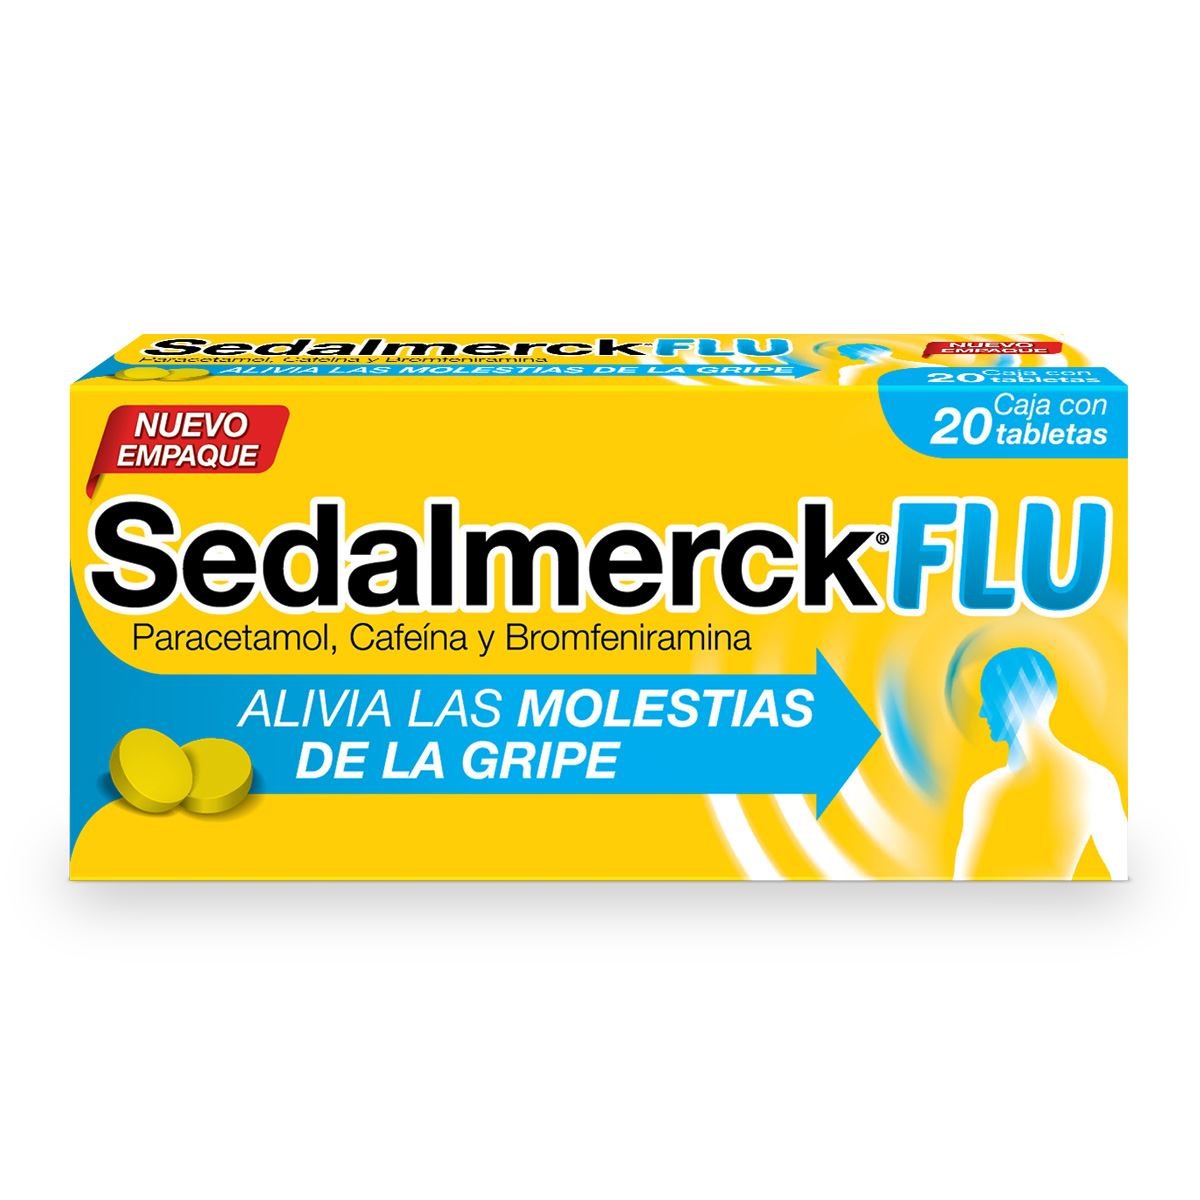 Sedalmerck Flu 20 Tabletas